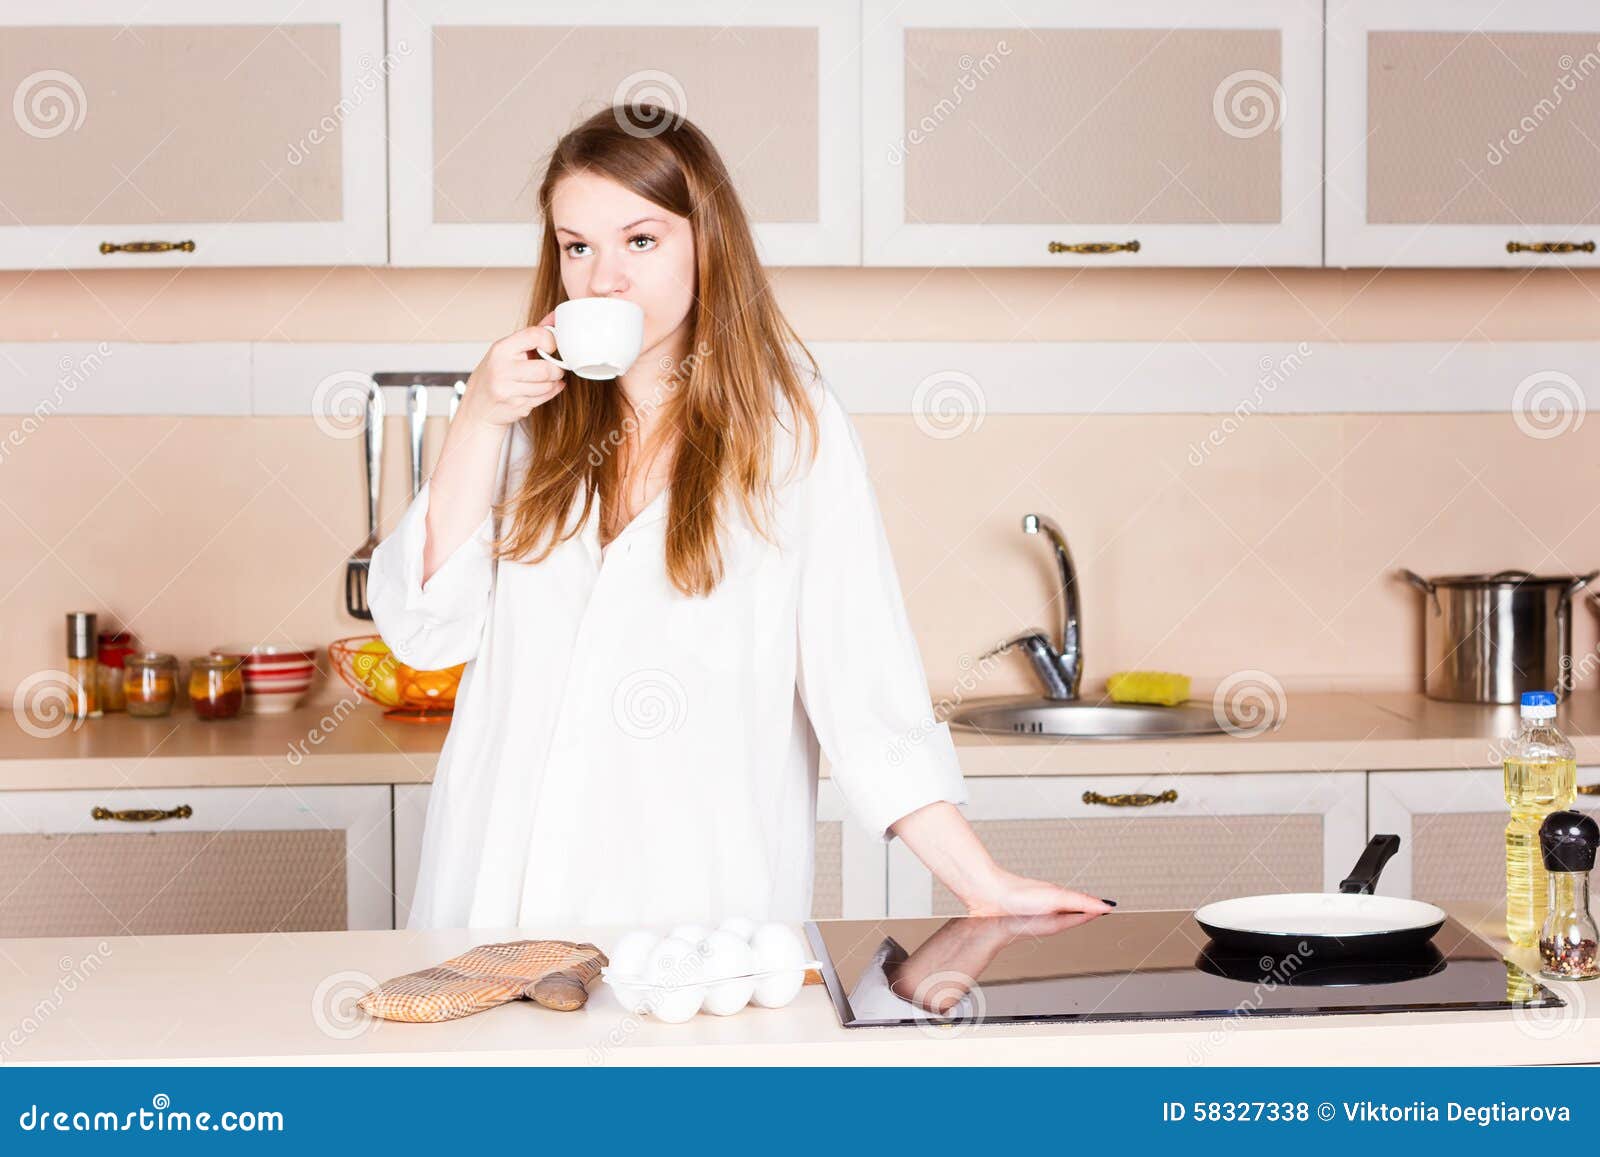 Попить на кухне. Девушка пьет кофе на кухне. Девушка пьет чай на кухне. Девушки пьют на кухне. Девочка пьёт чай на кухне.